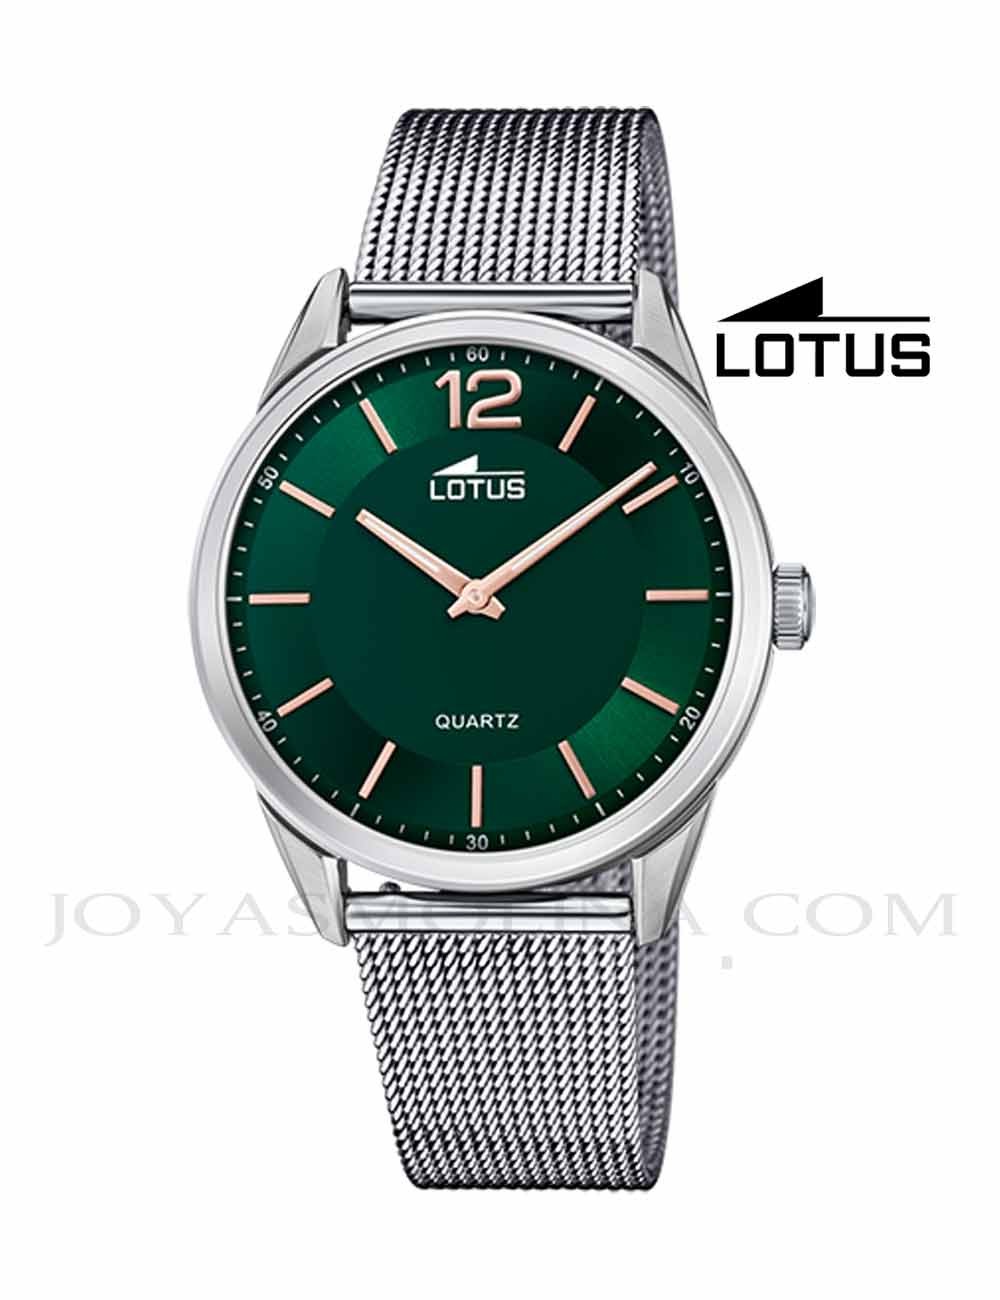 Reloj Lotus hombre cadena correa esfera verde 18734-3